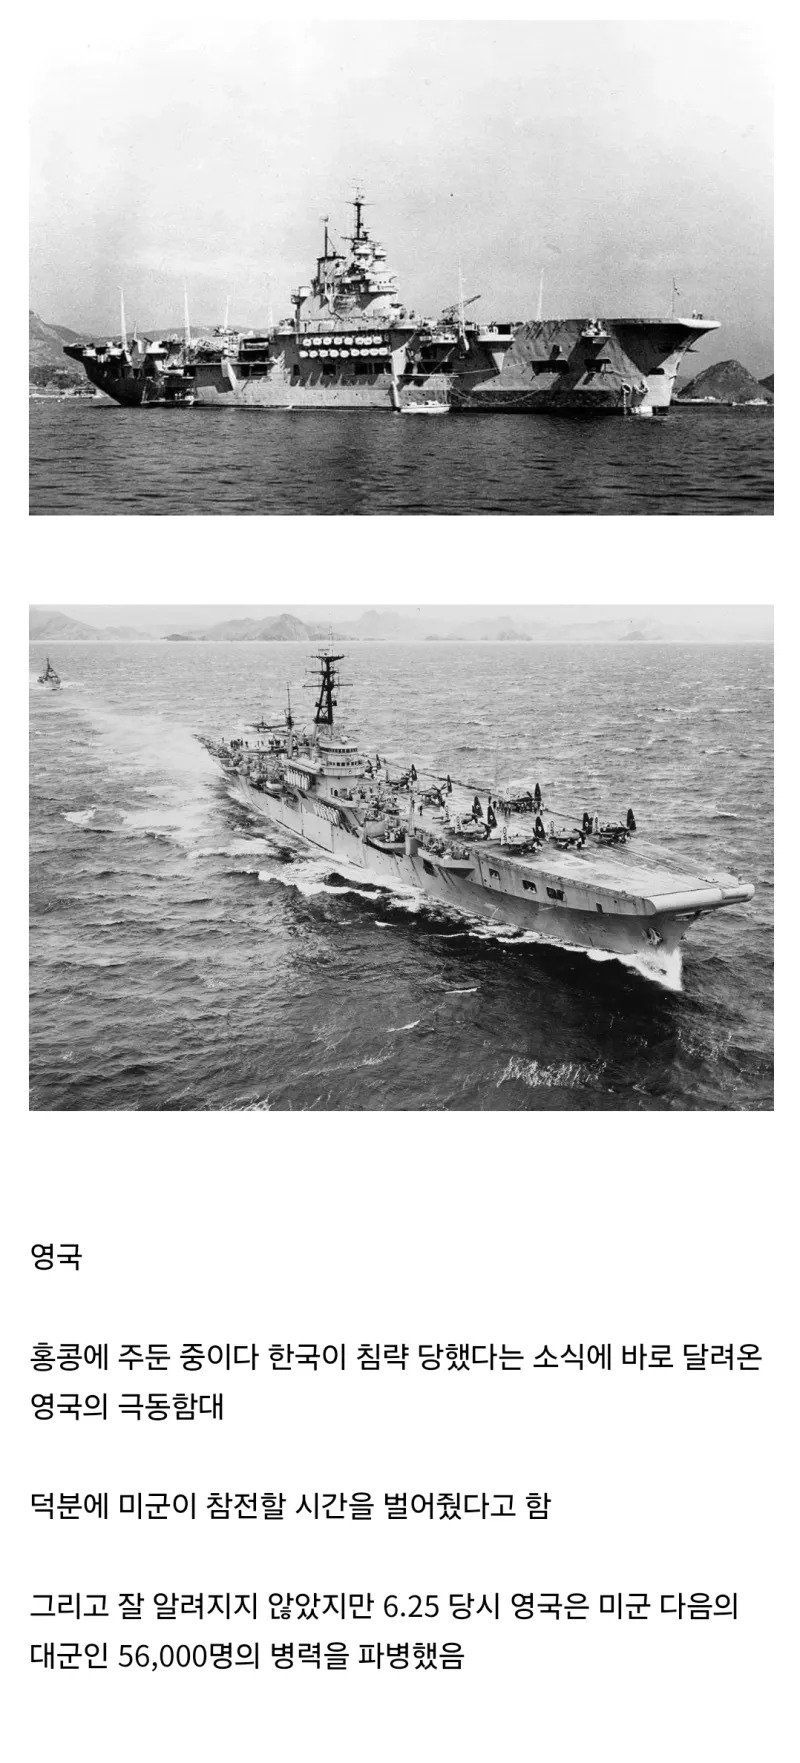 한국이 침략 당했다는 소식에 가장 먼저 달려온 나라